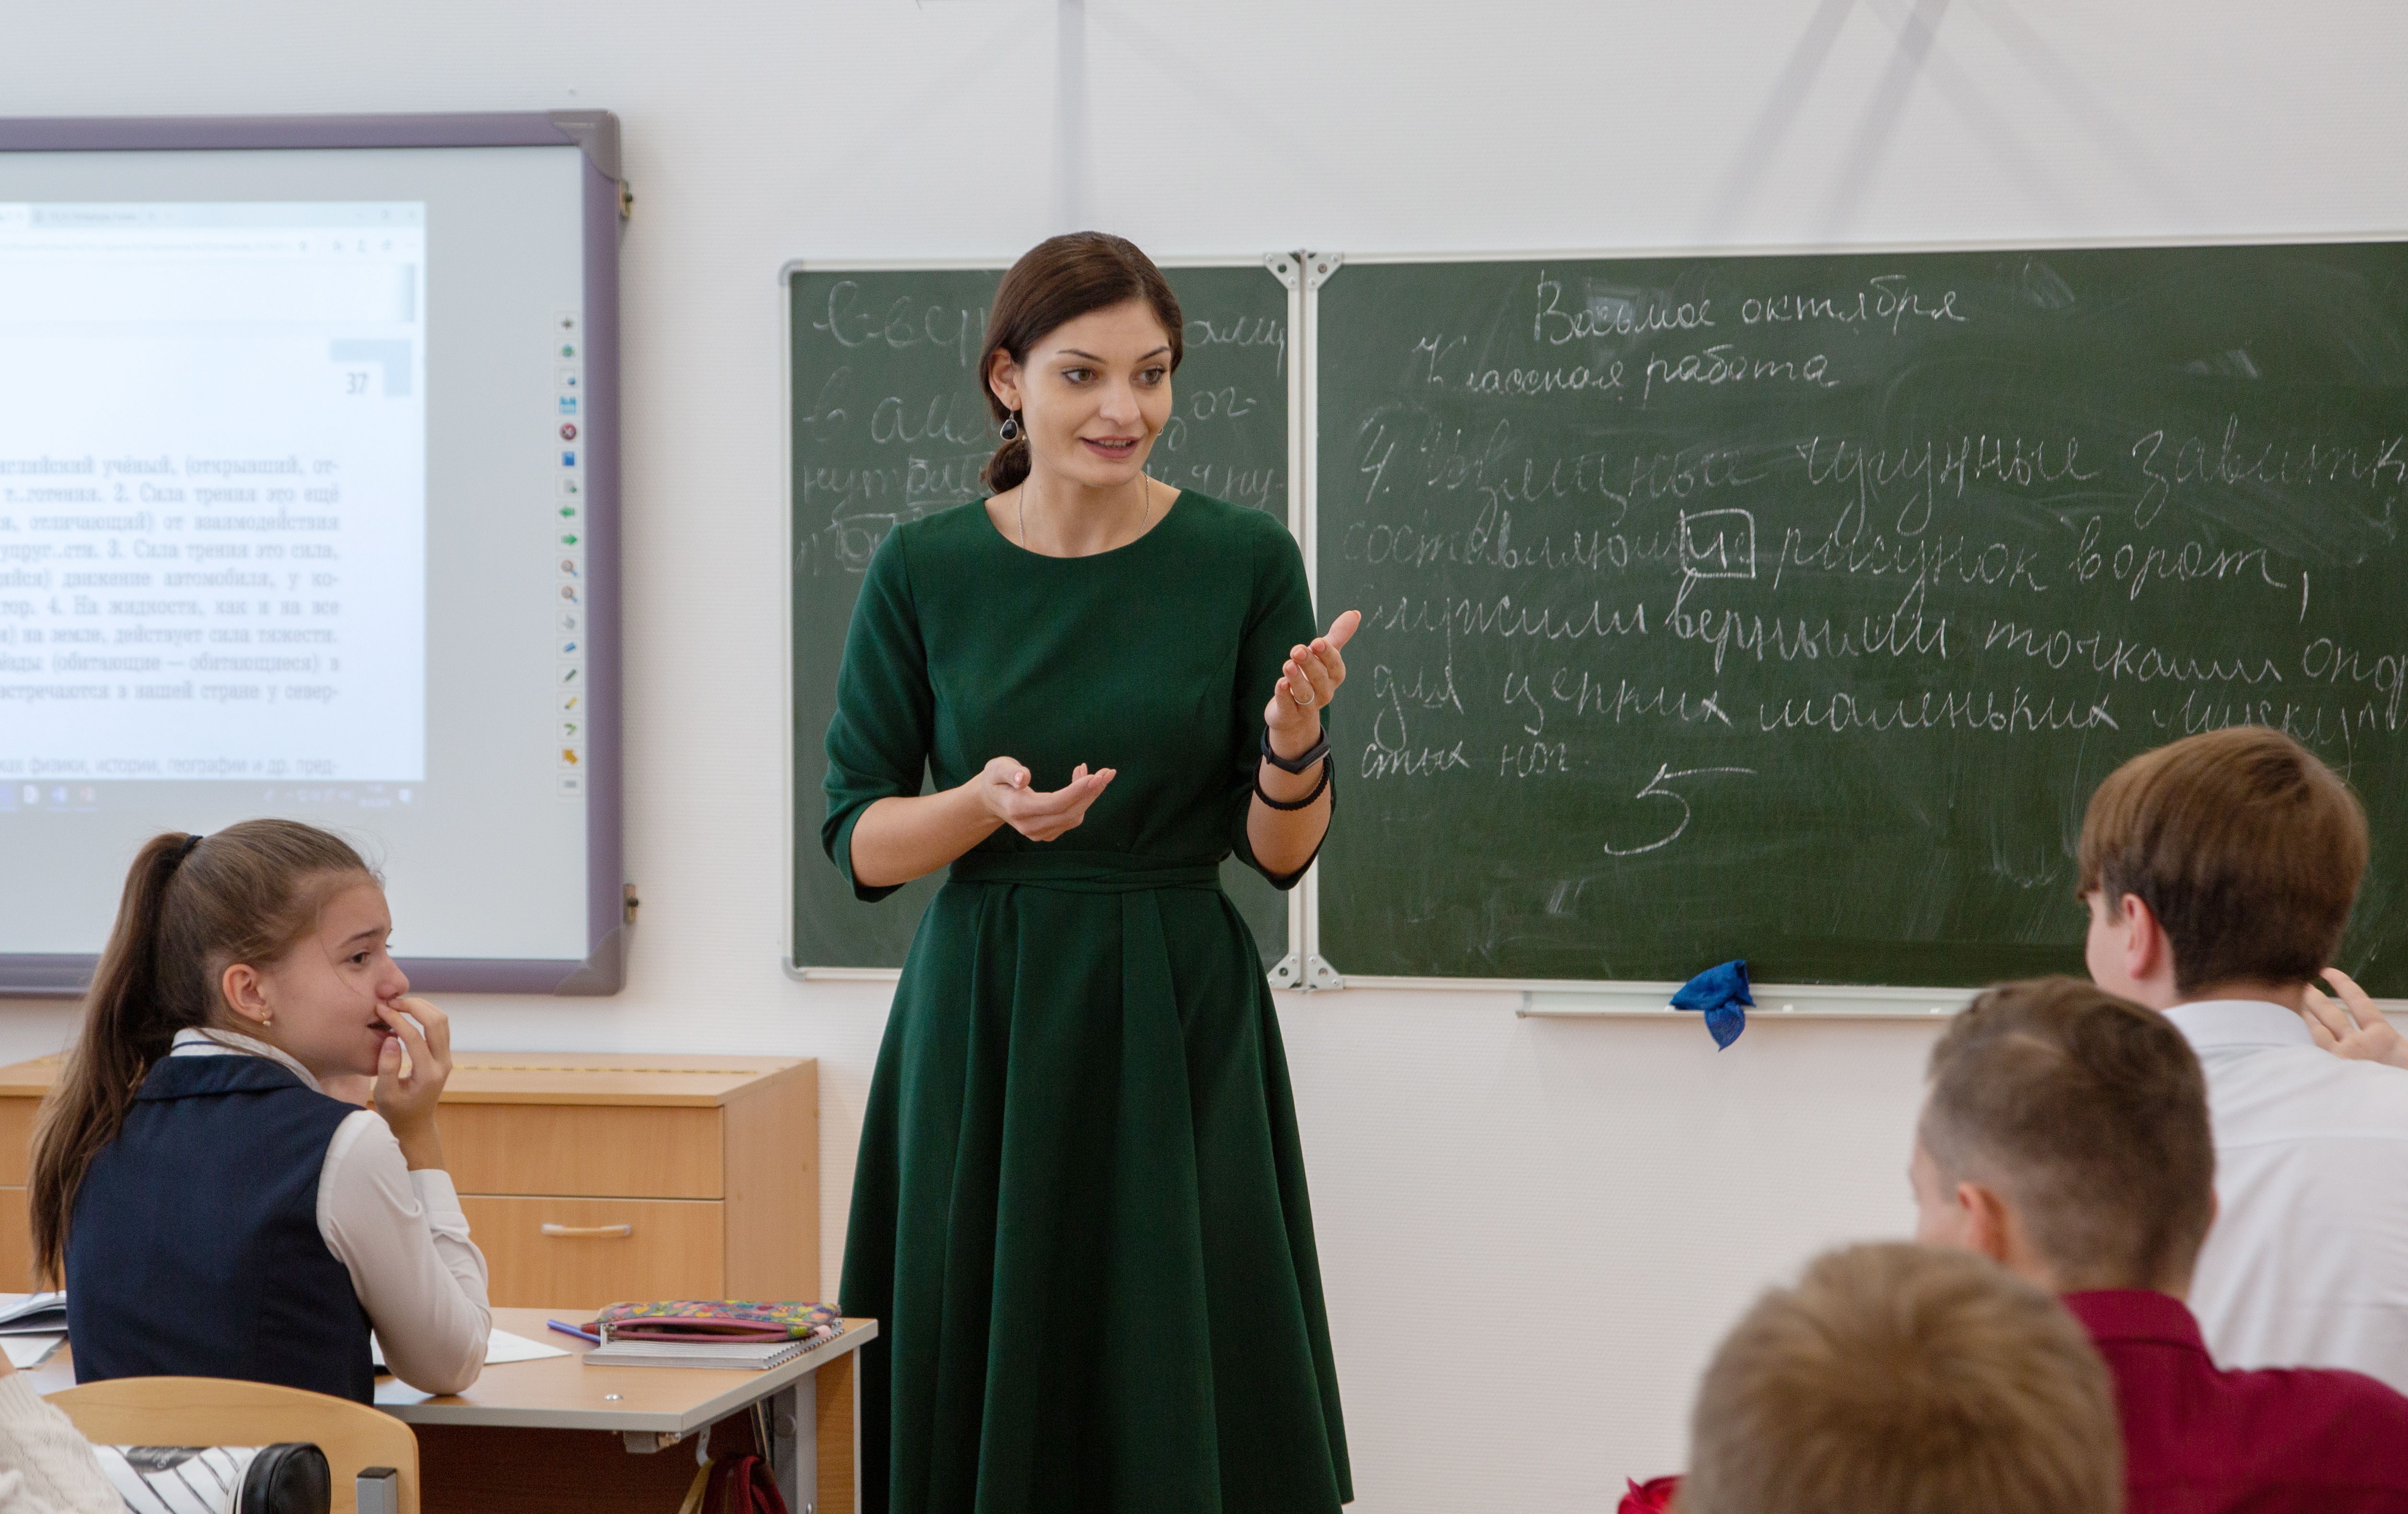 Депутат Ларионова рассказала, когда в школах введут предмет семьеведение